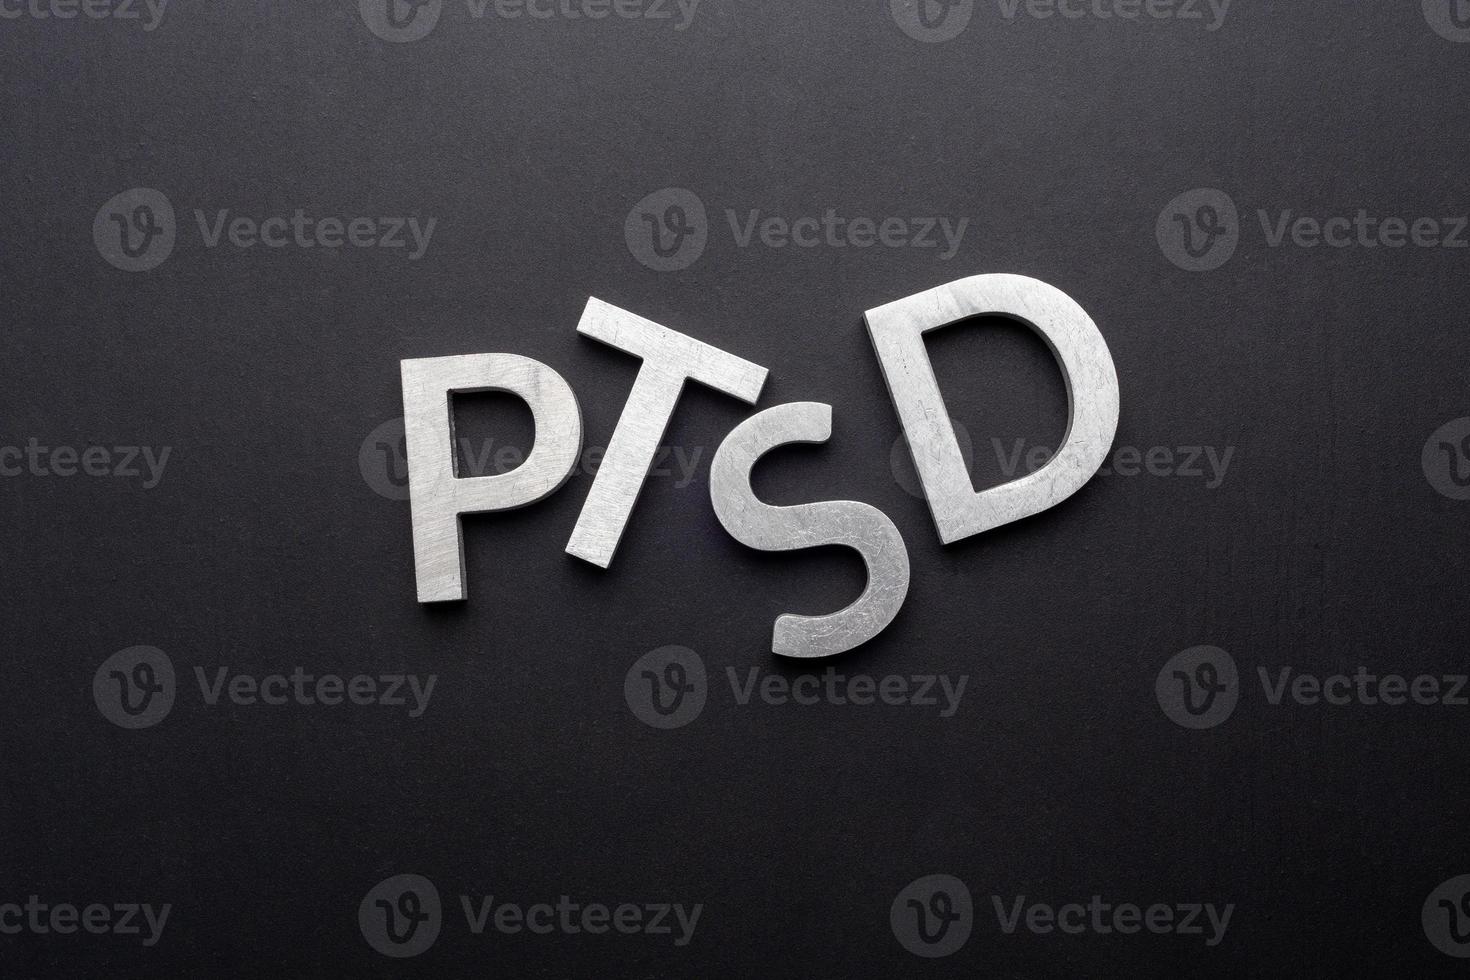 le mot ptsd posé avec des lettres en métal argenté sur fond noir plat en perspective directement au-dessus photo